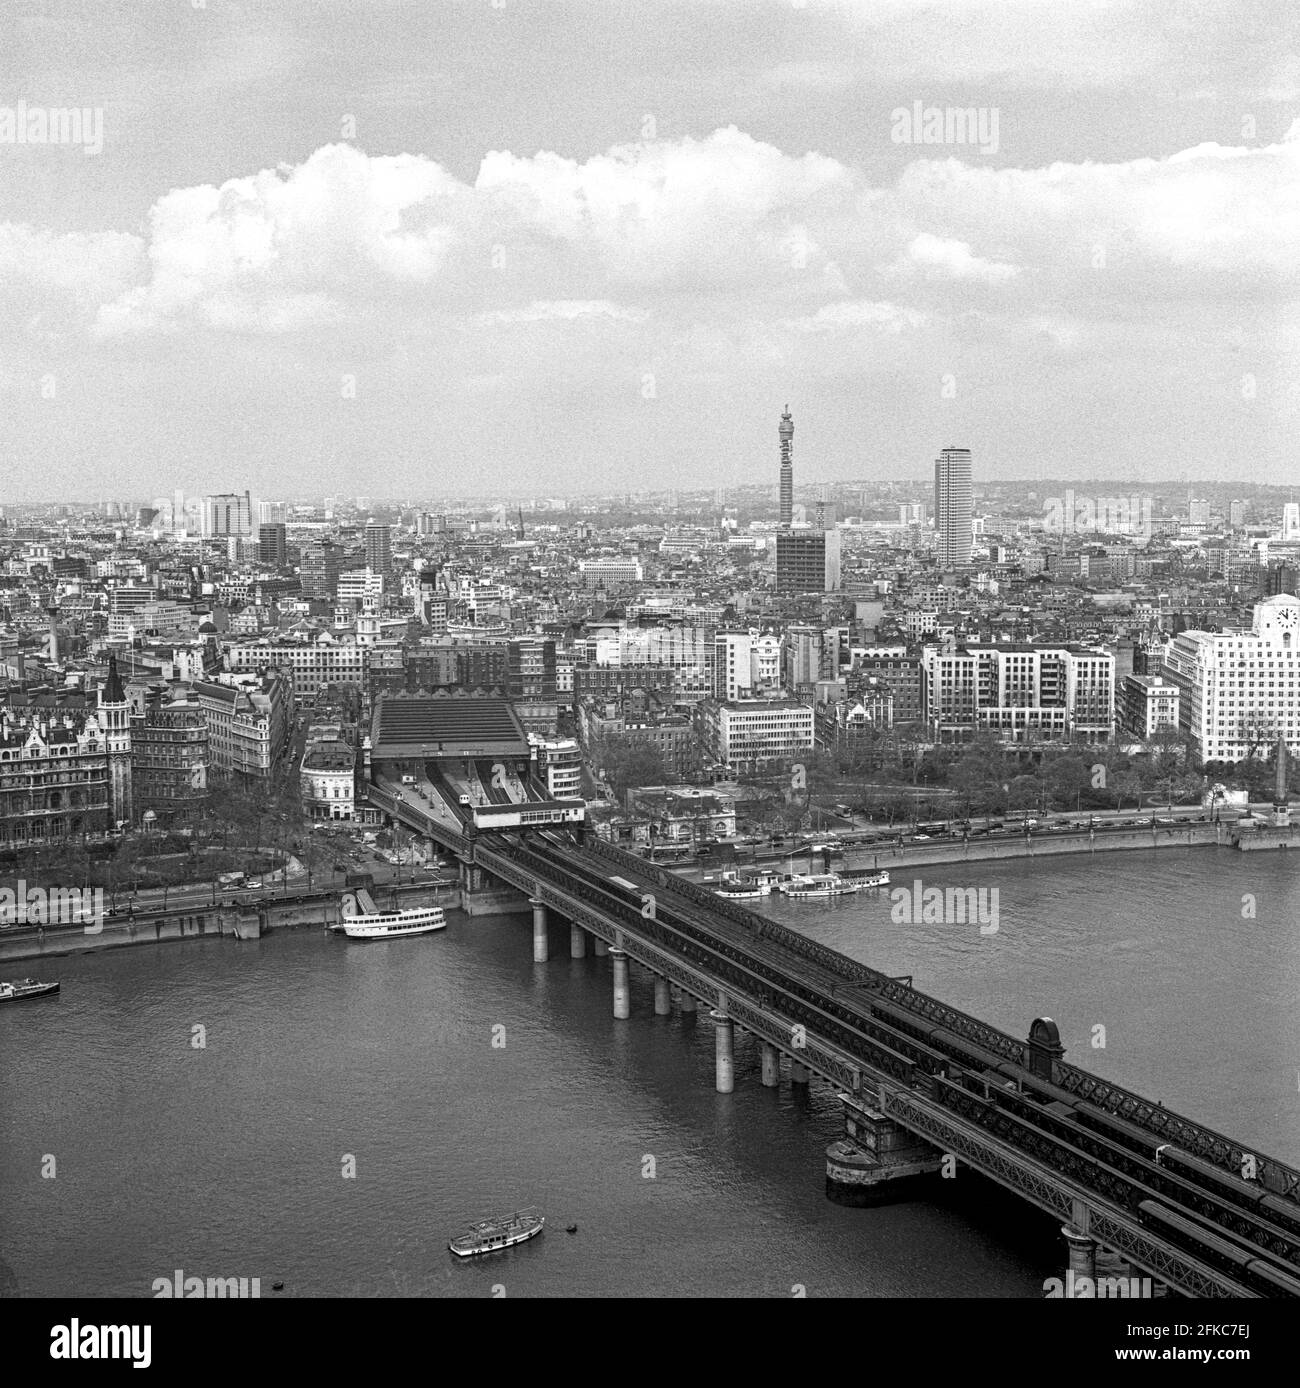 Vista del puente Hungerford desde el Shell Center, Londres, Reino Unido - tomada en 1971 Foto de stock